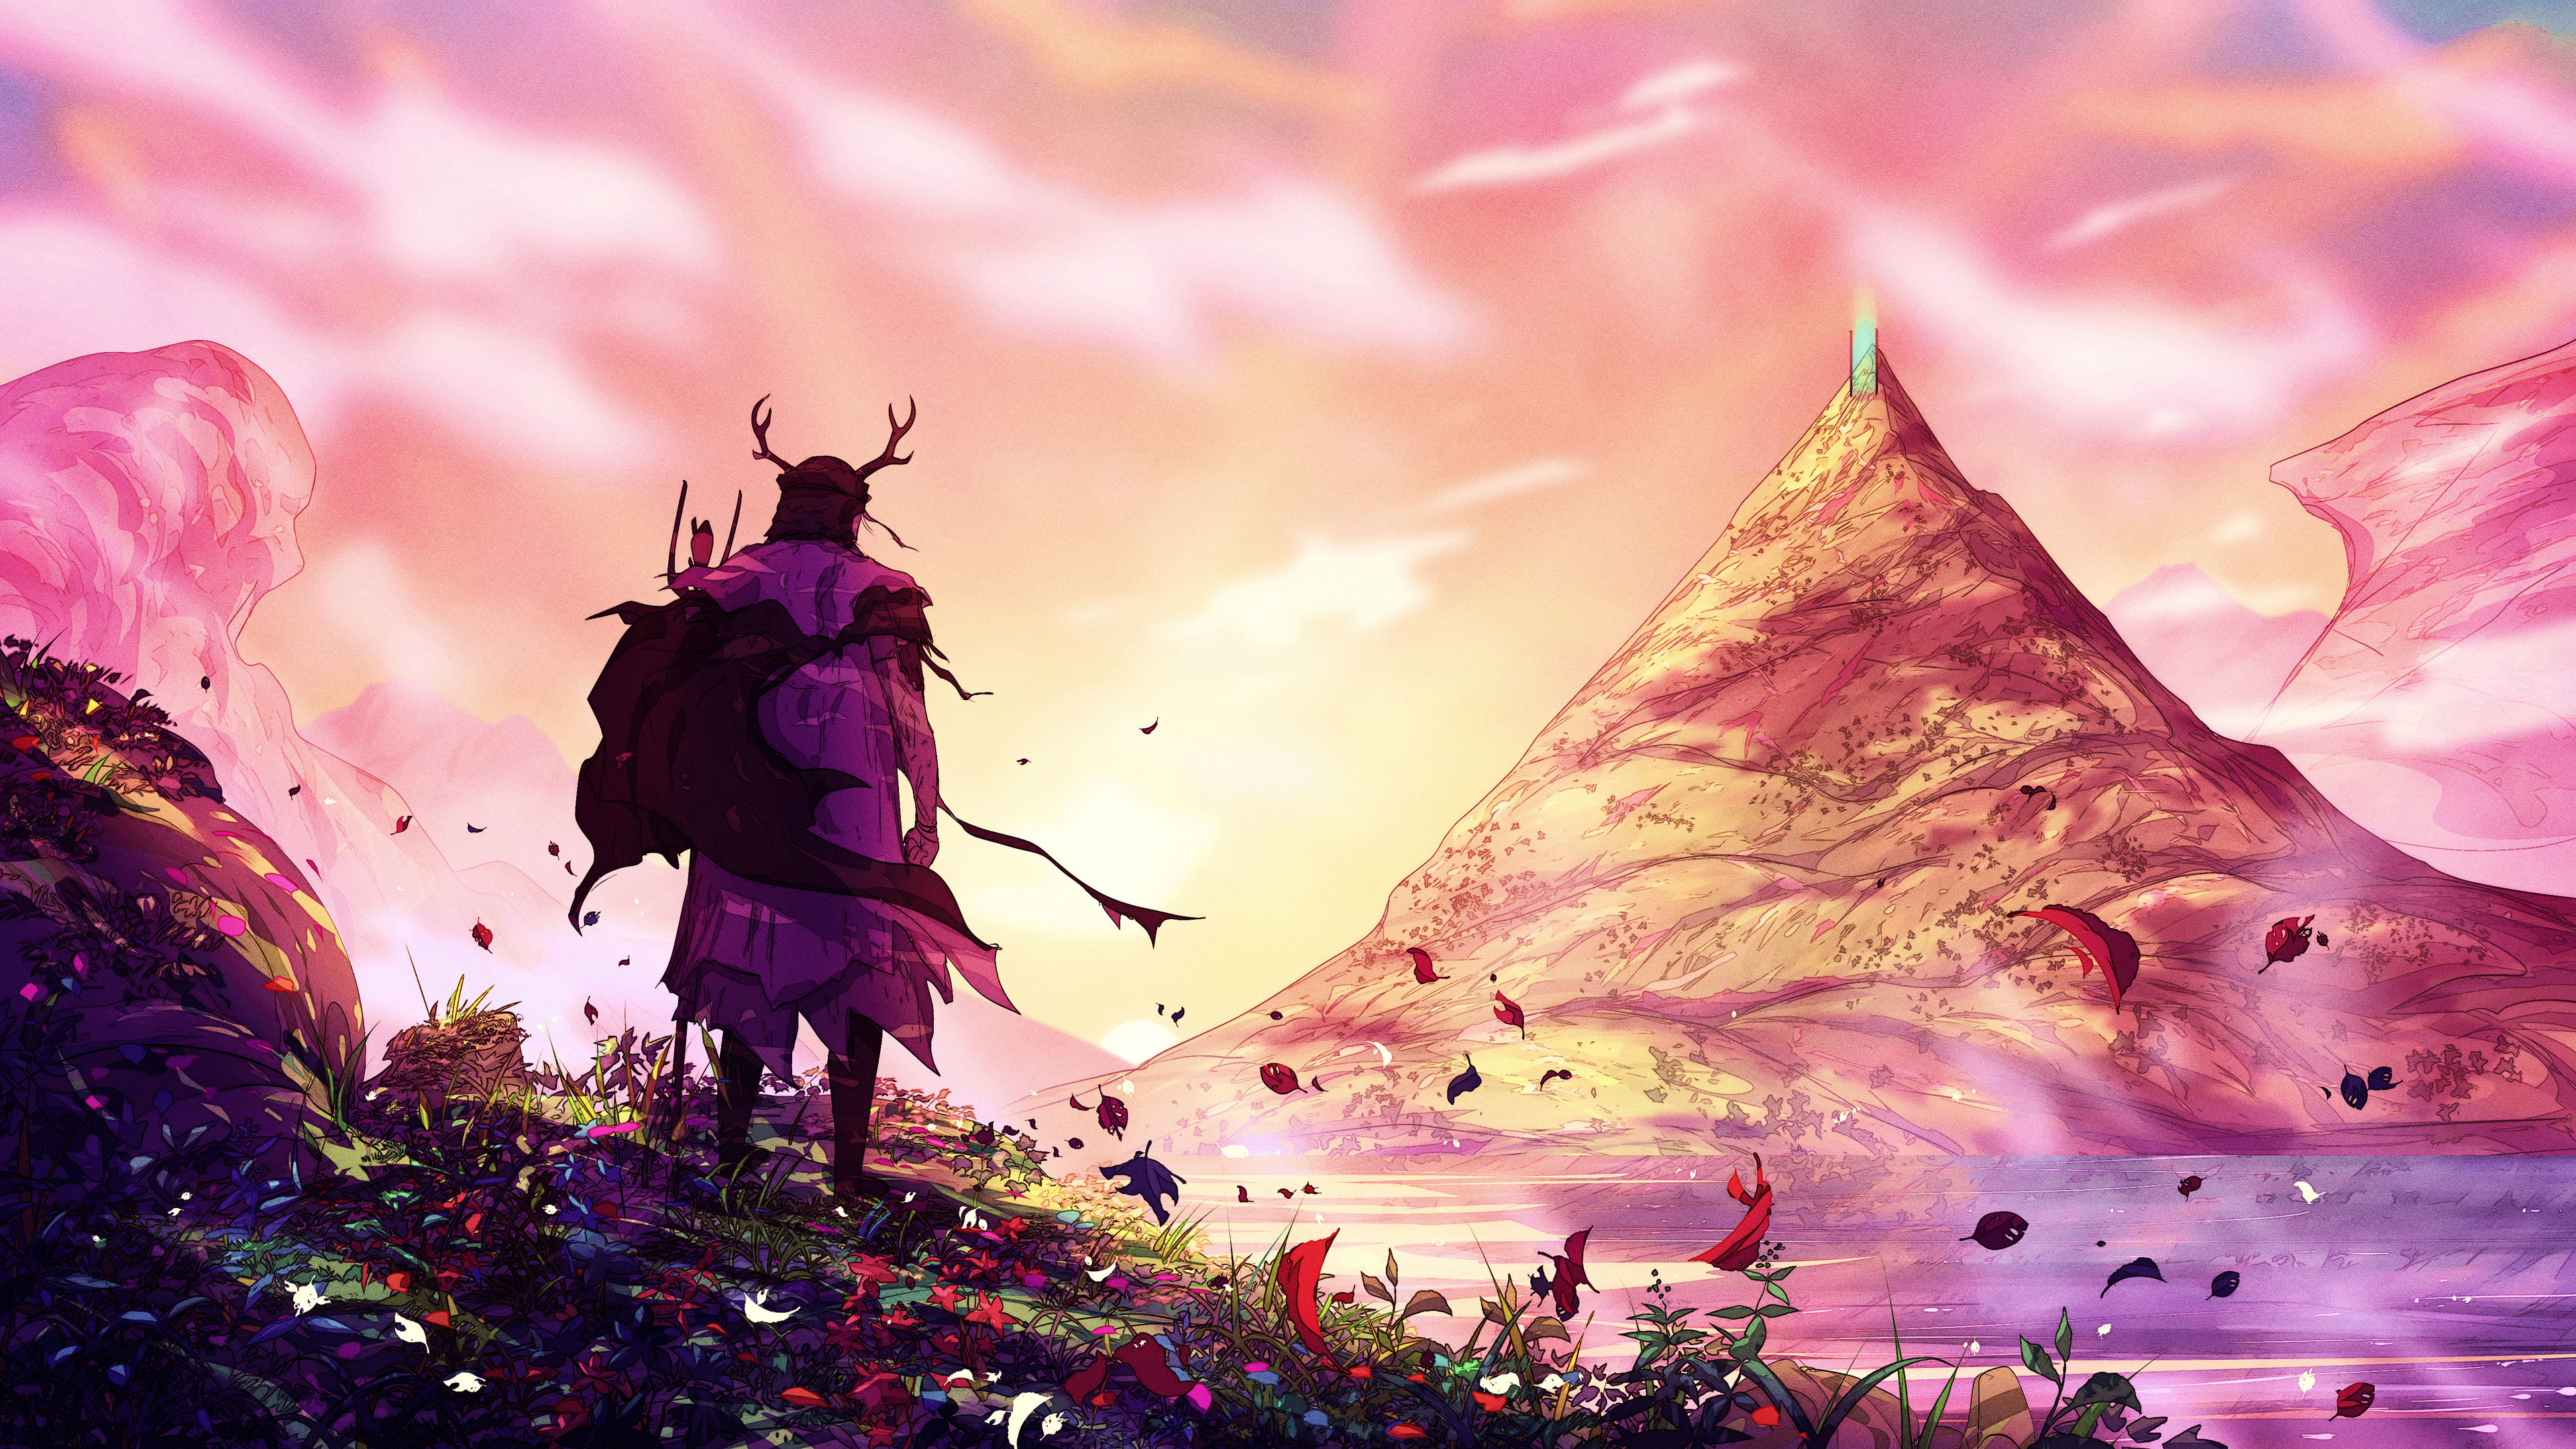 The Traveler Fantasy Art Wallpapers